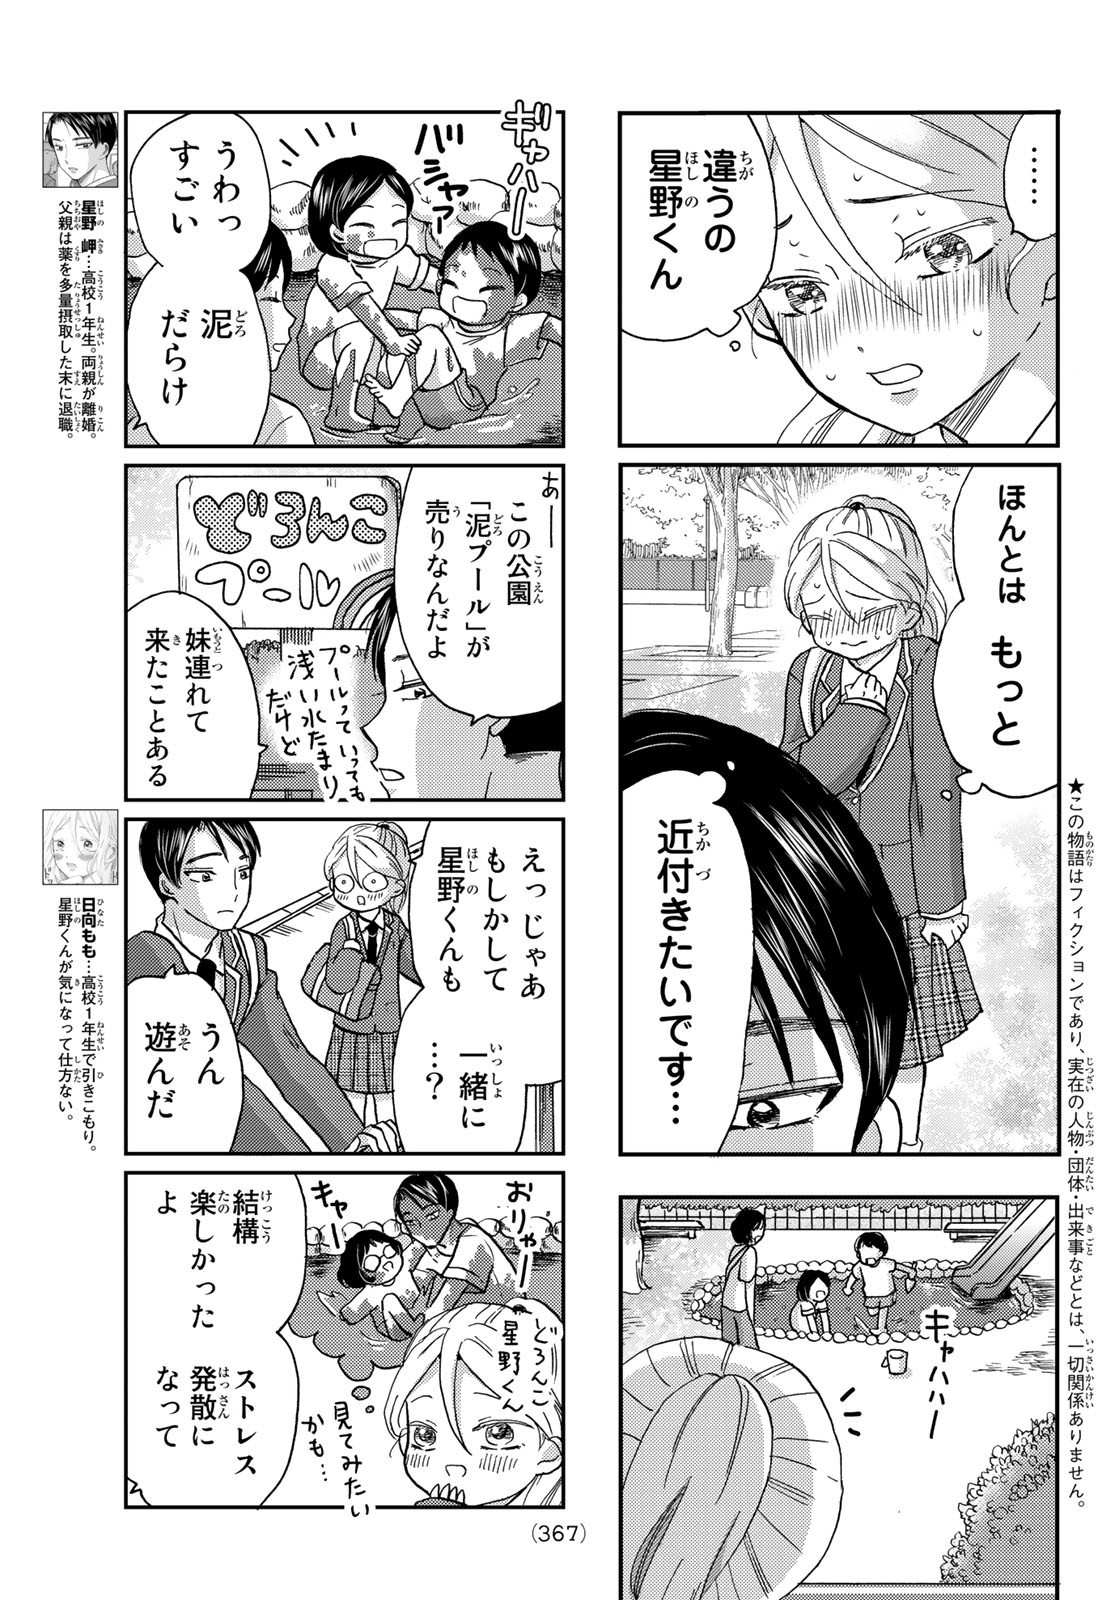 Hinata-san, Hoshino desu. - Chapter 021 - Page 3